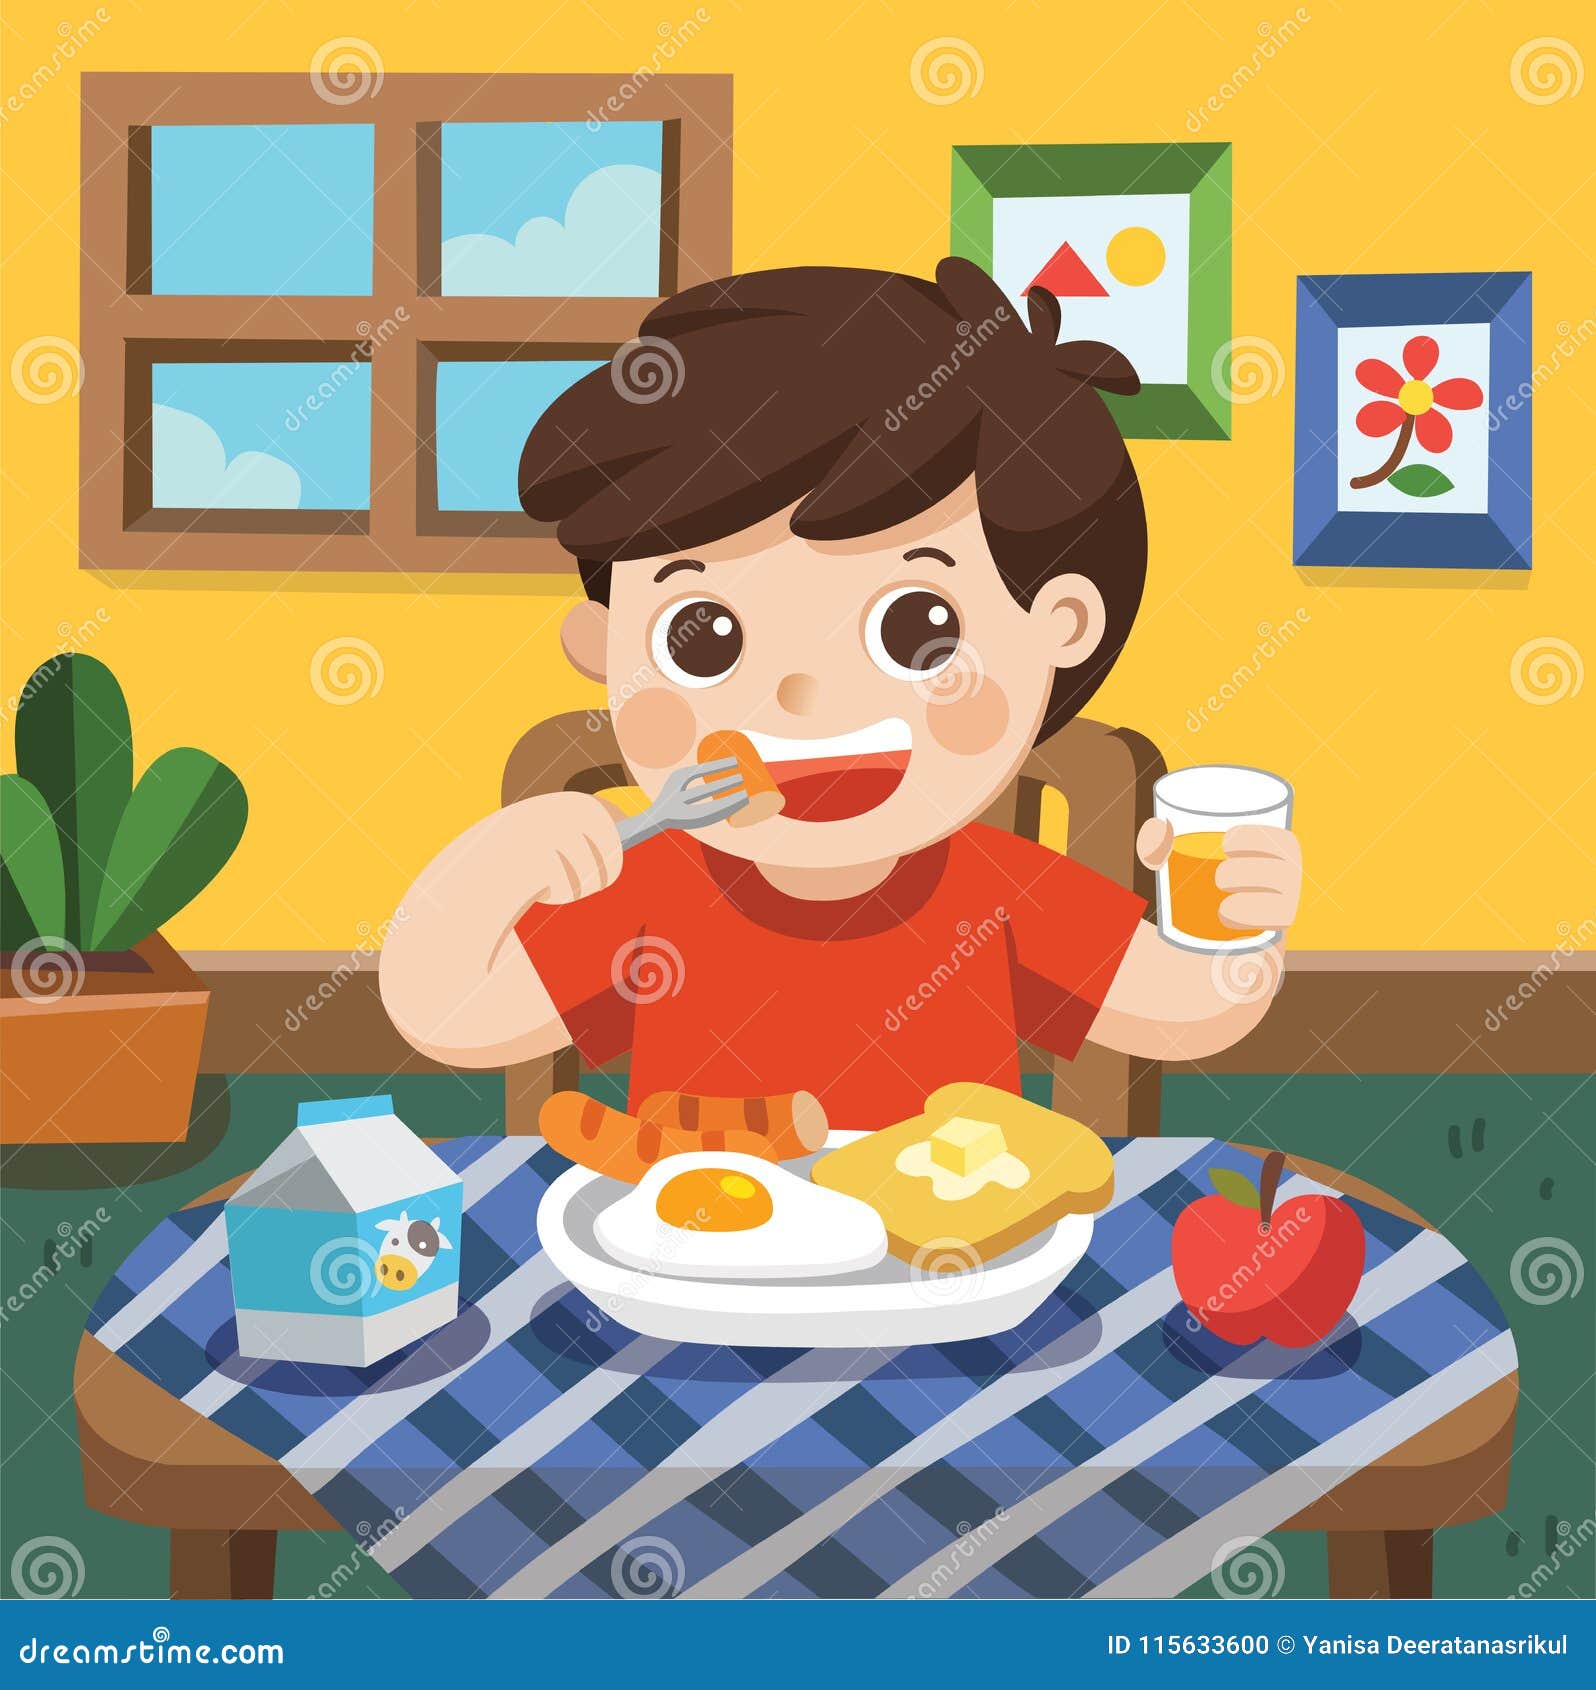 a little boy happy to eat breakfast.